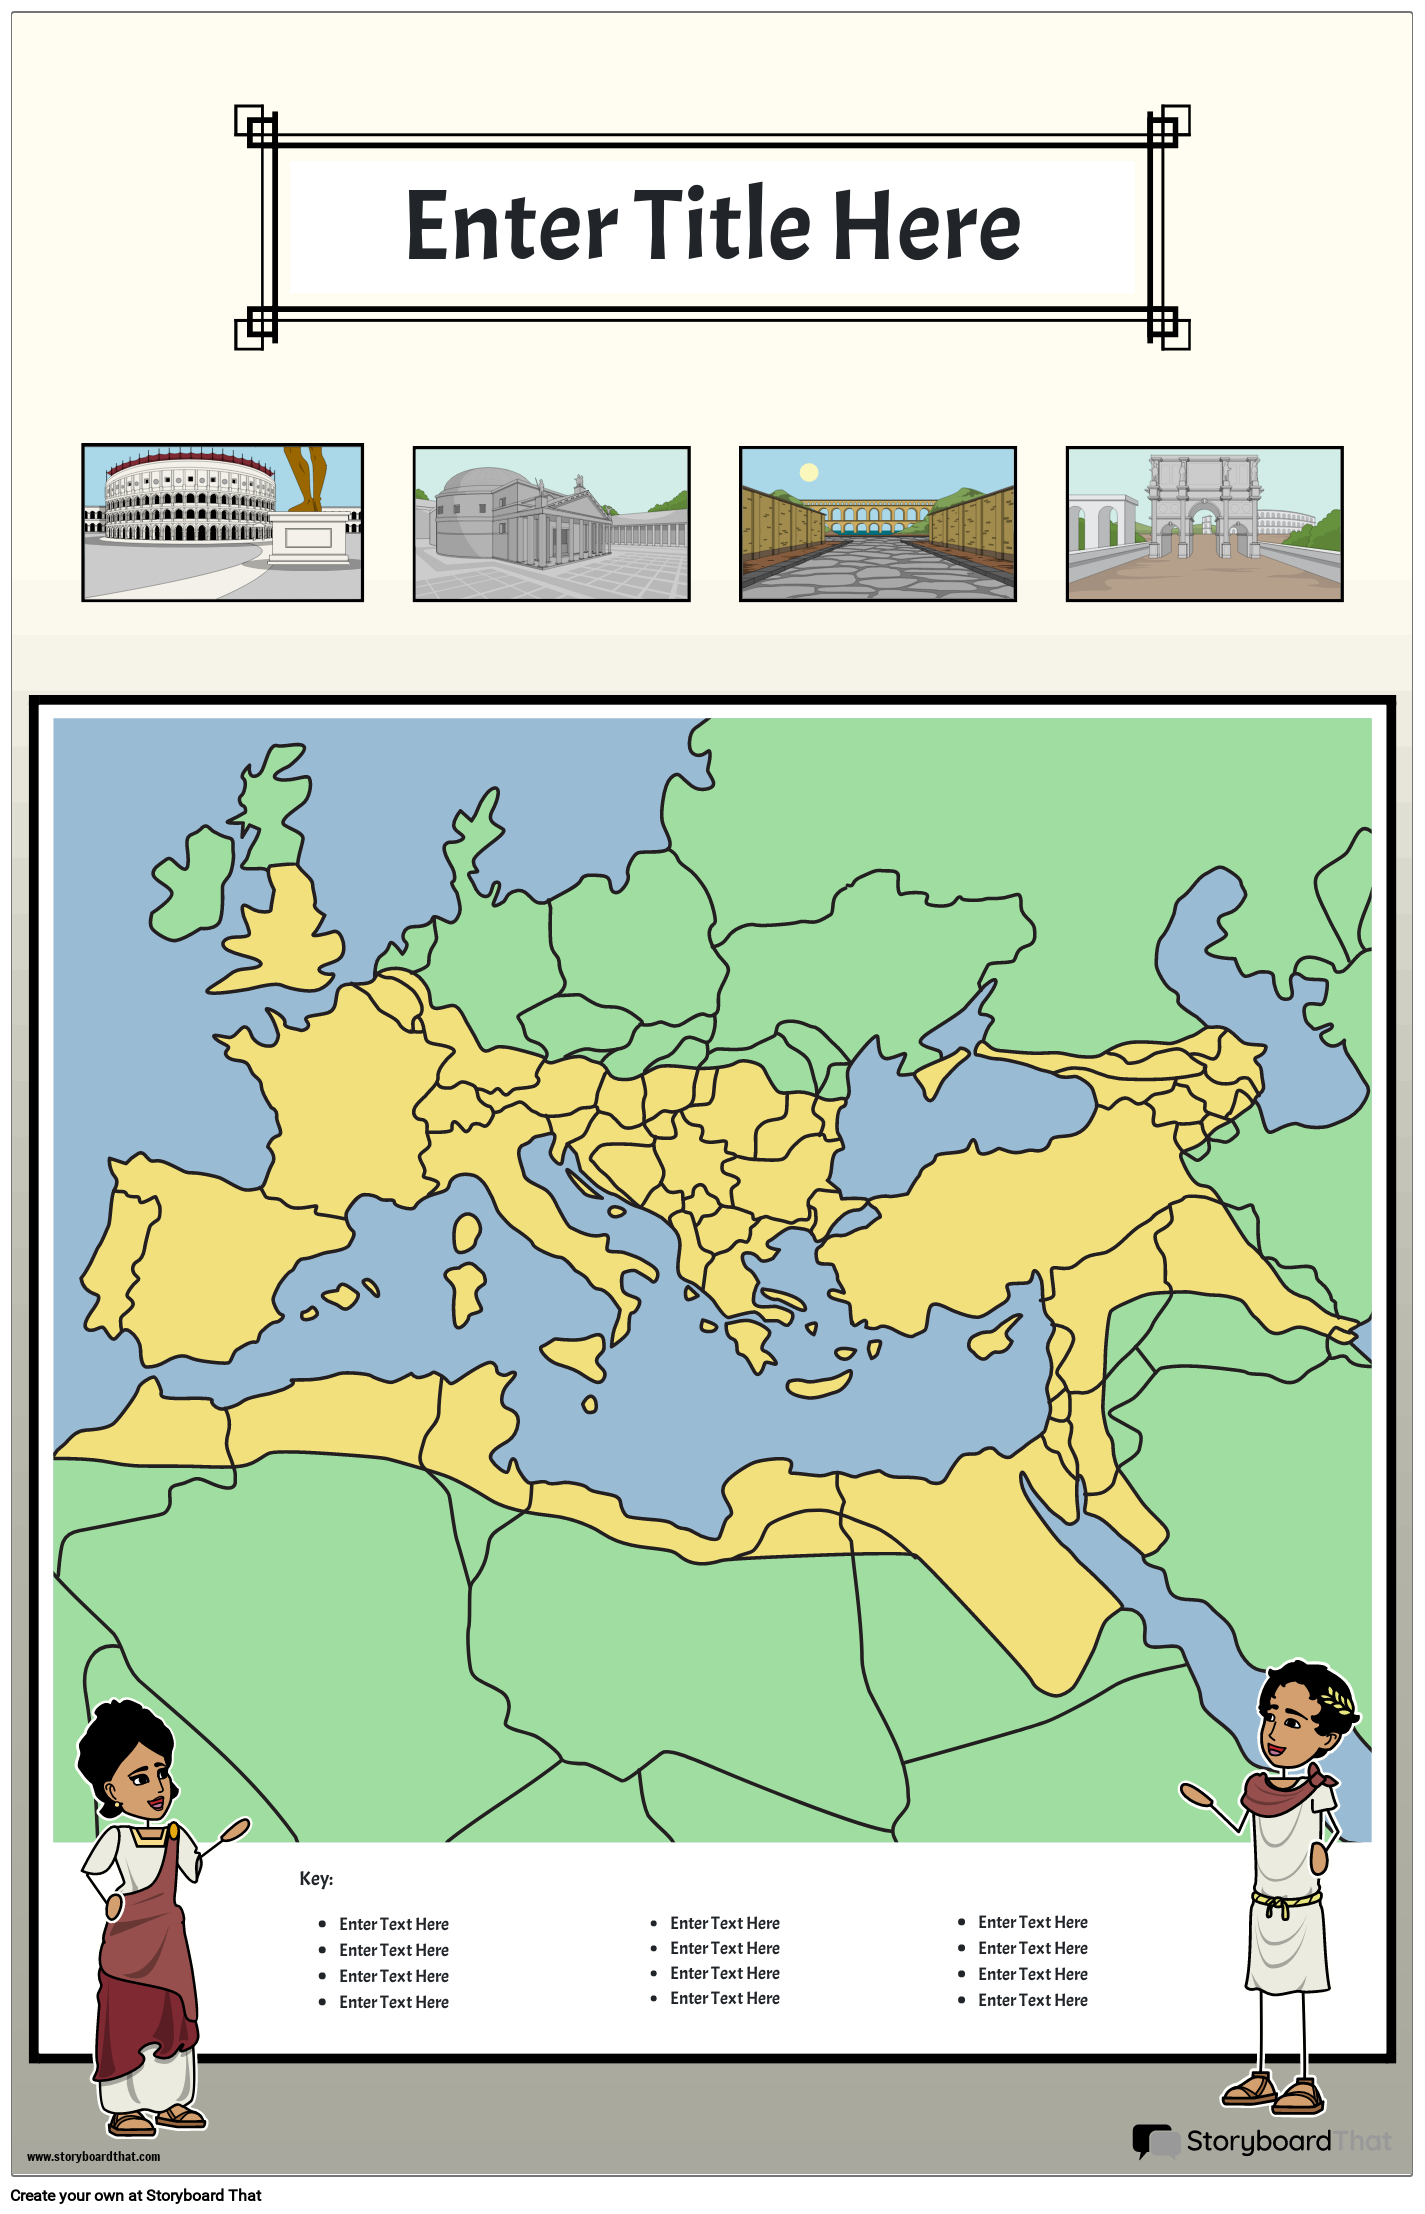 Karttajuliste 33 Värimuotokuva Muinainen Rooma